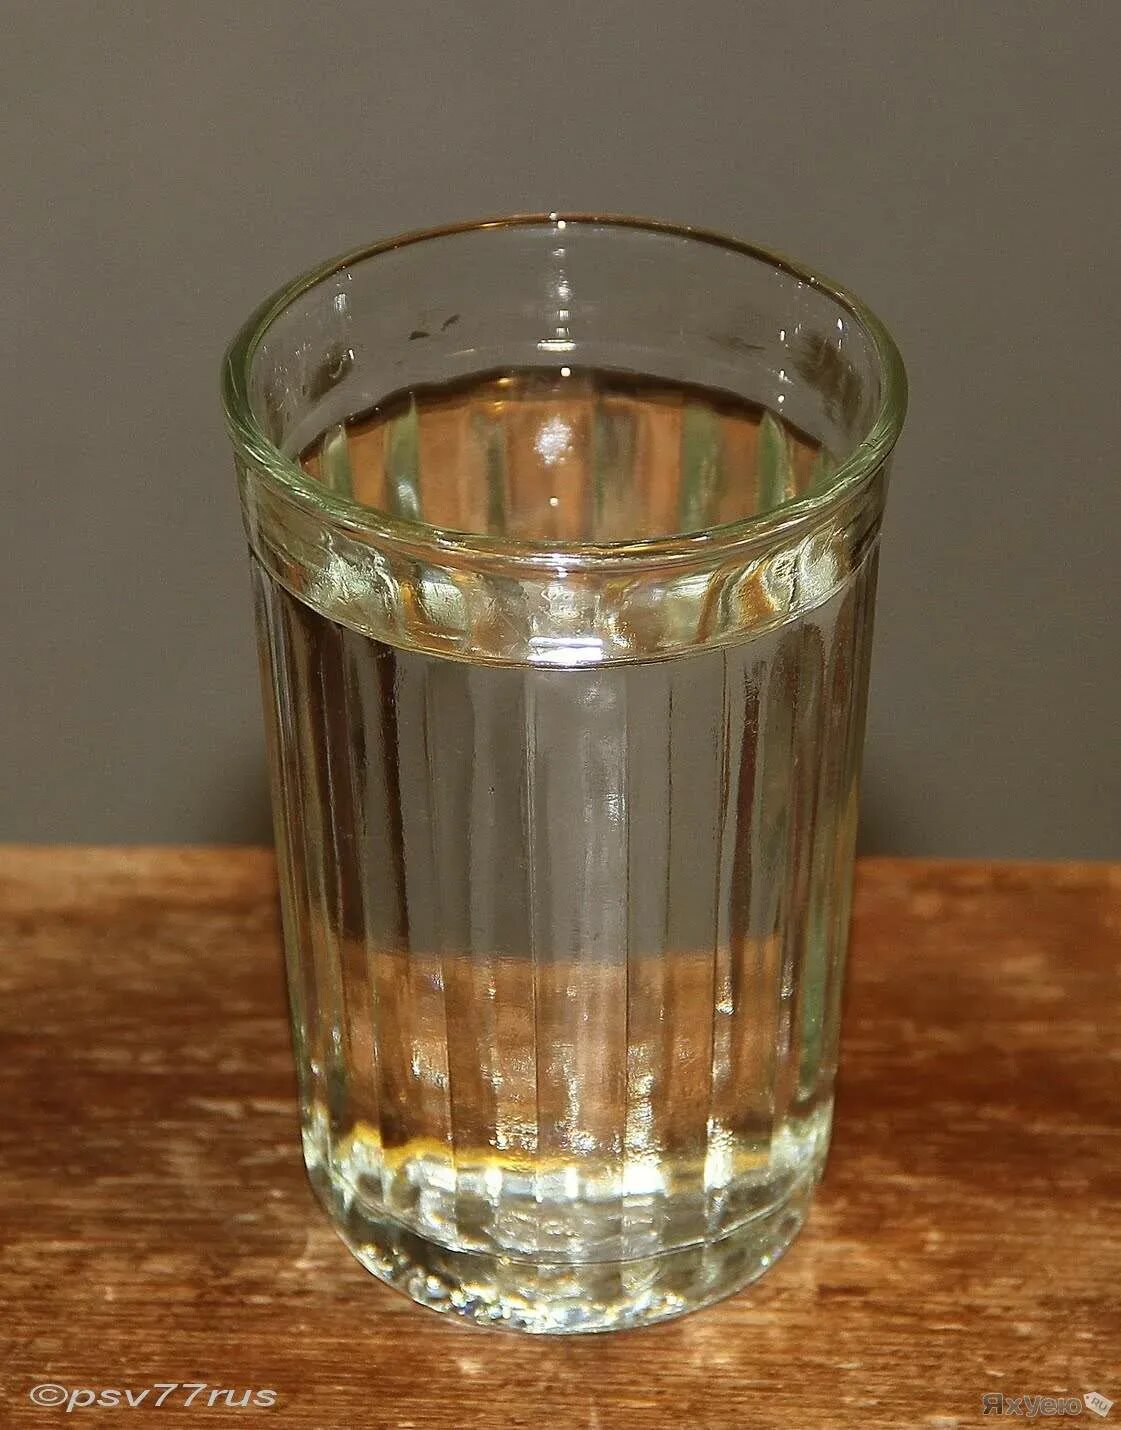 Граненый стакан 100 грамм. Граненый стакан с водой. Полный стакан. В стакан налили 120 мл воды